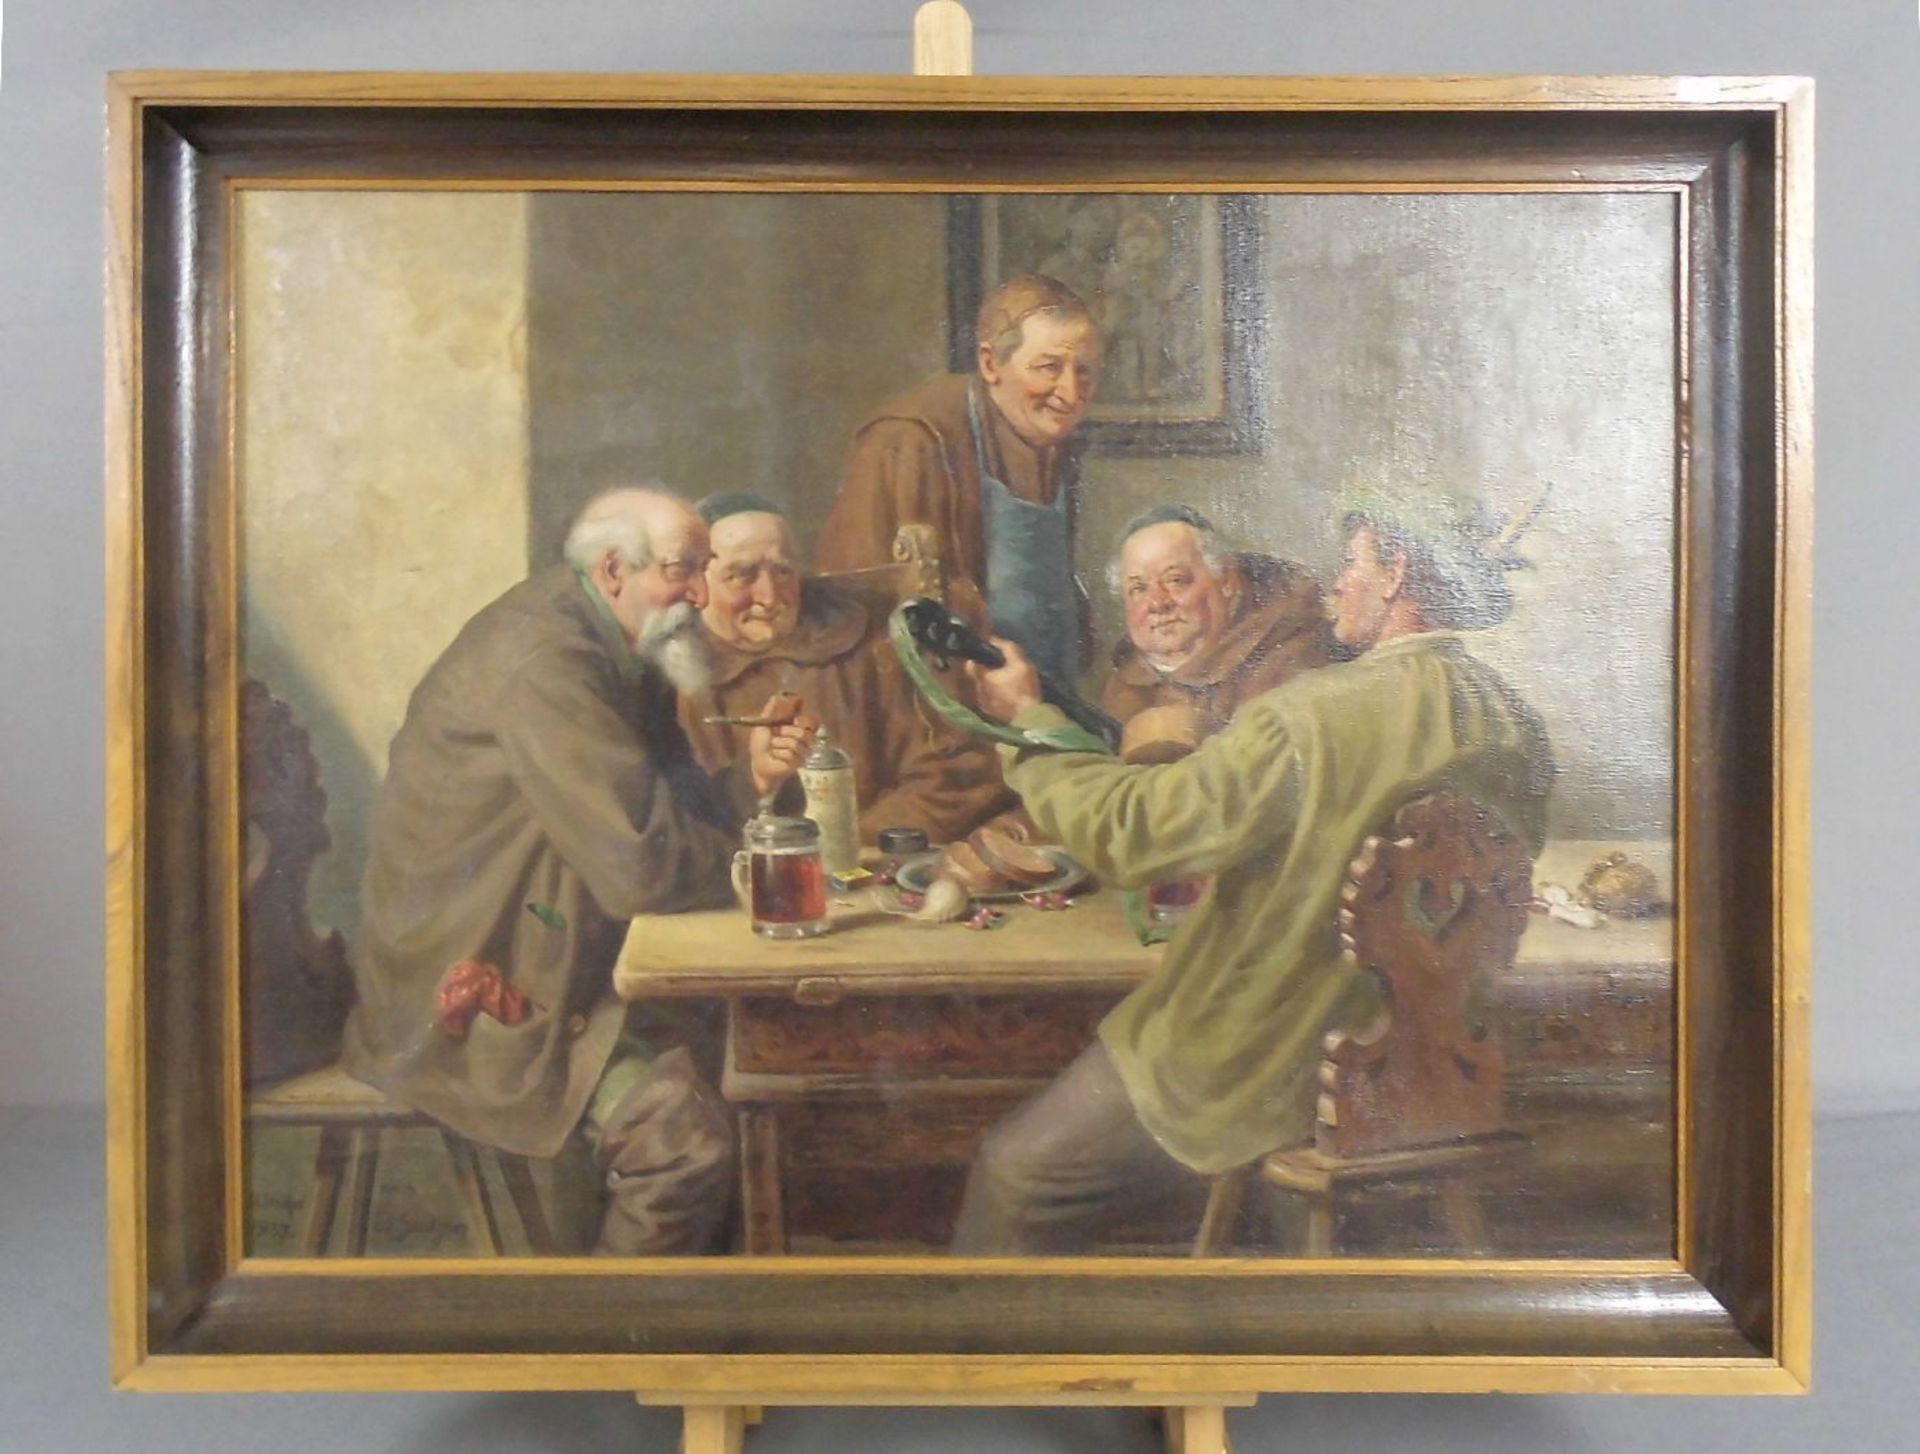 VÖLKEL, U. (deutscher Maler 19./20. Jh.), Gemälde / painting / Kopie nach Eduard von Grützner (